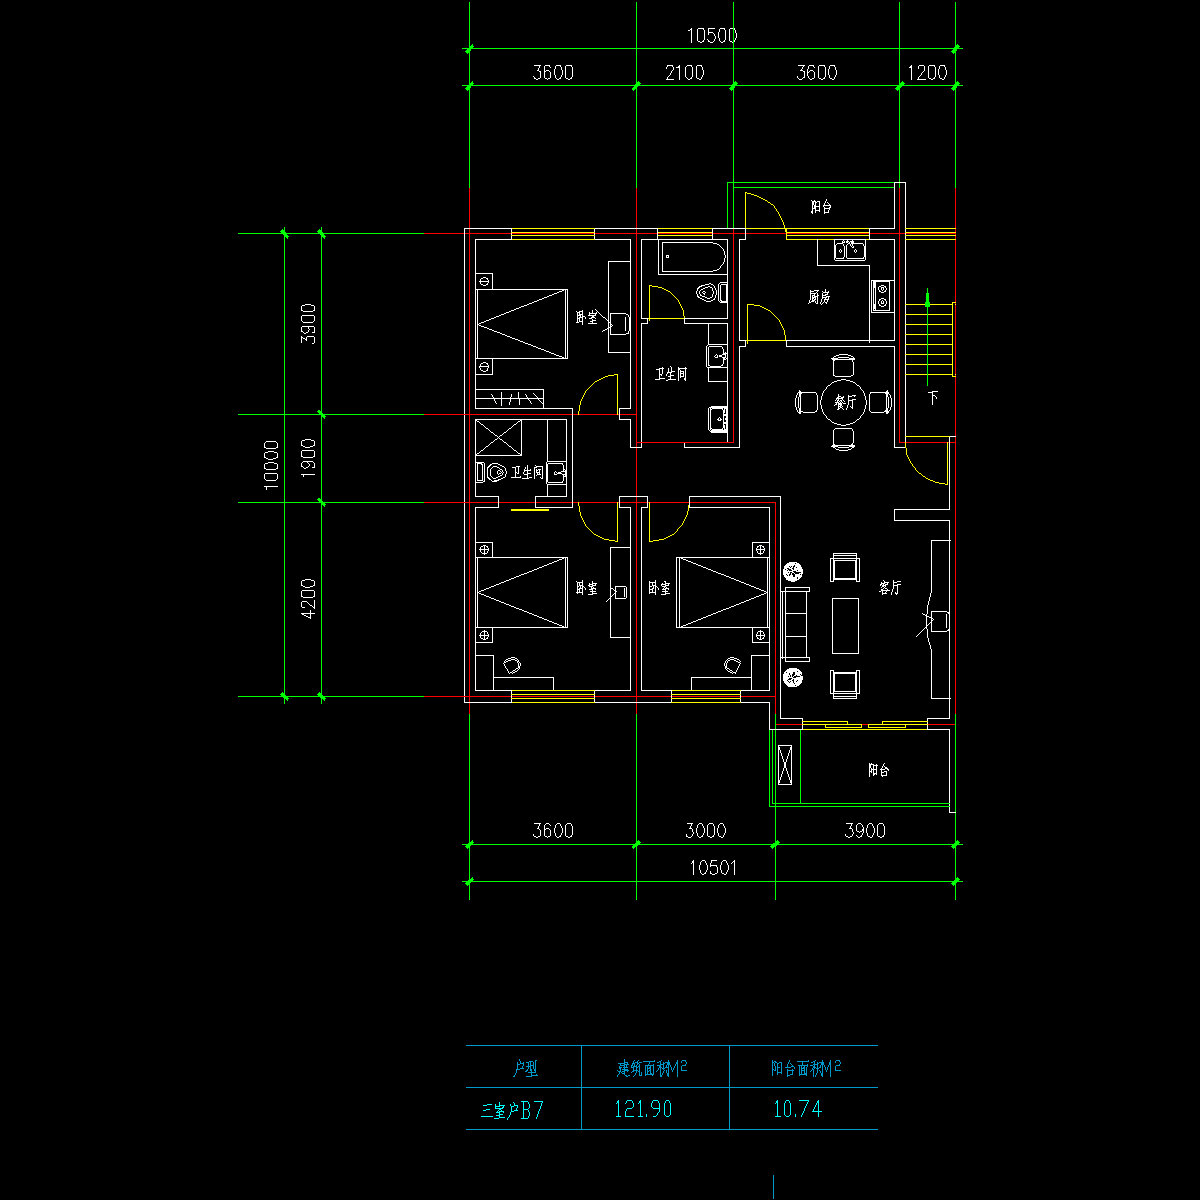 板式高层三室一厅单户户型CAD图纸(121.90)